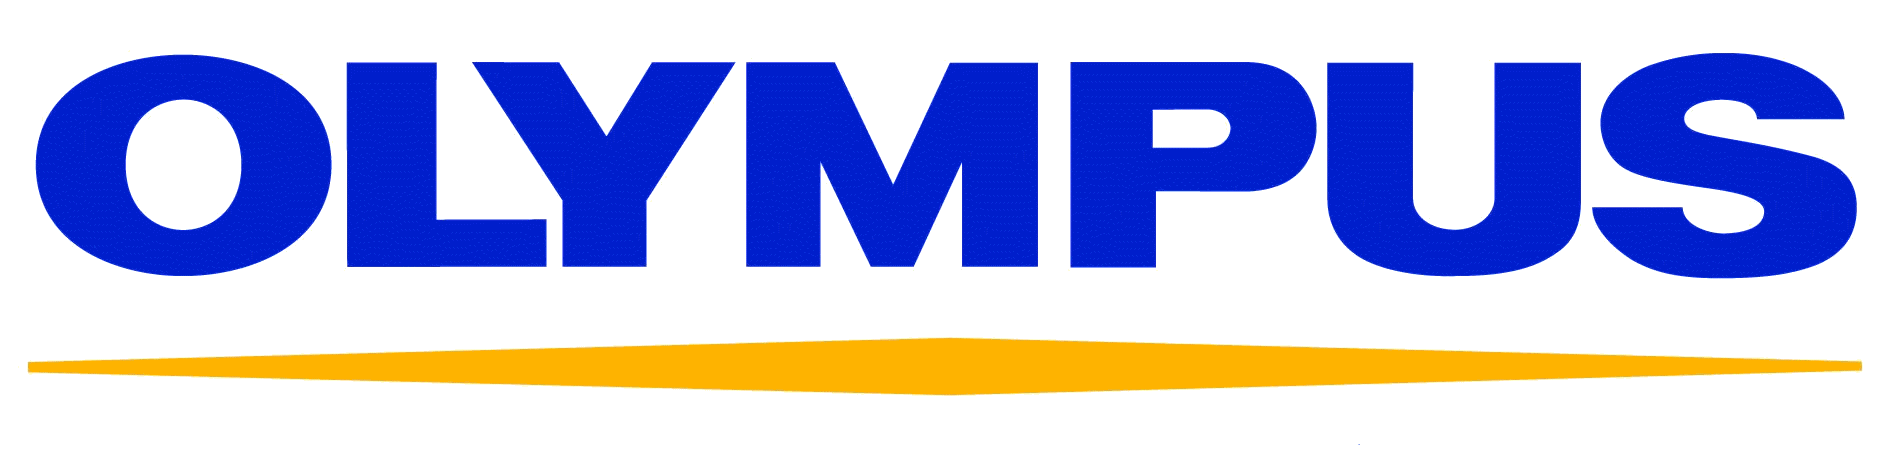 Olympus_logo.png